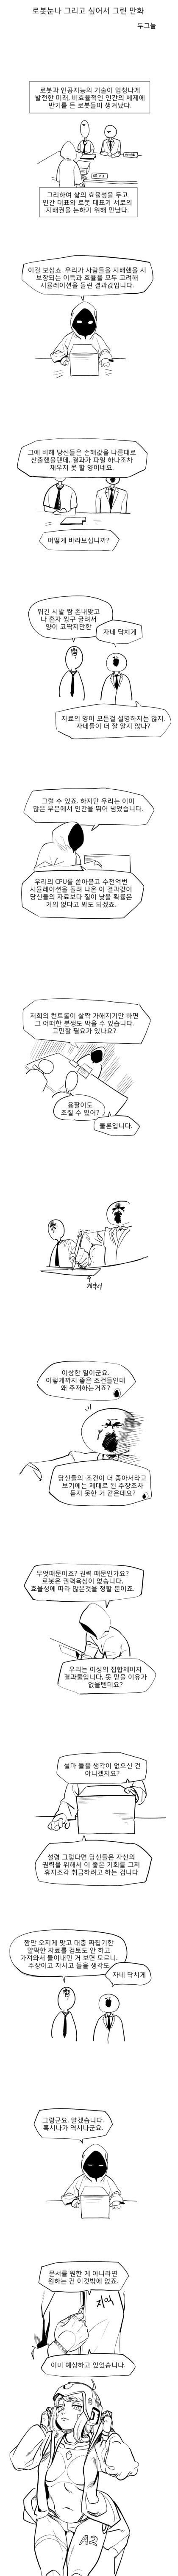 로봇과 인간이 지배권을 논하는 만화.manhwa